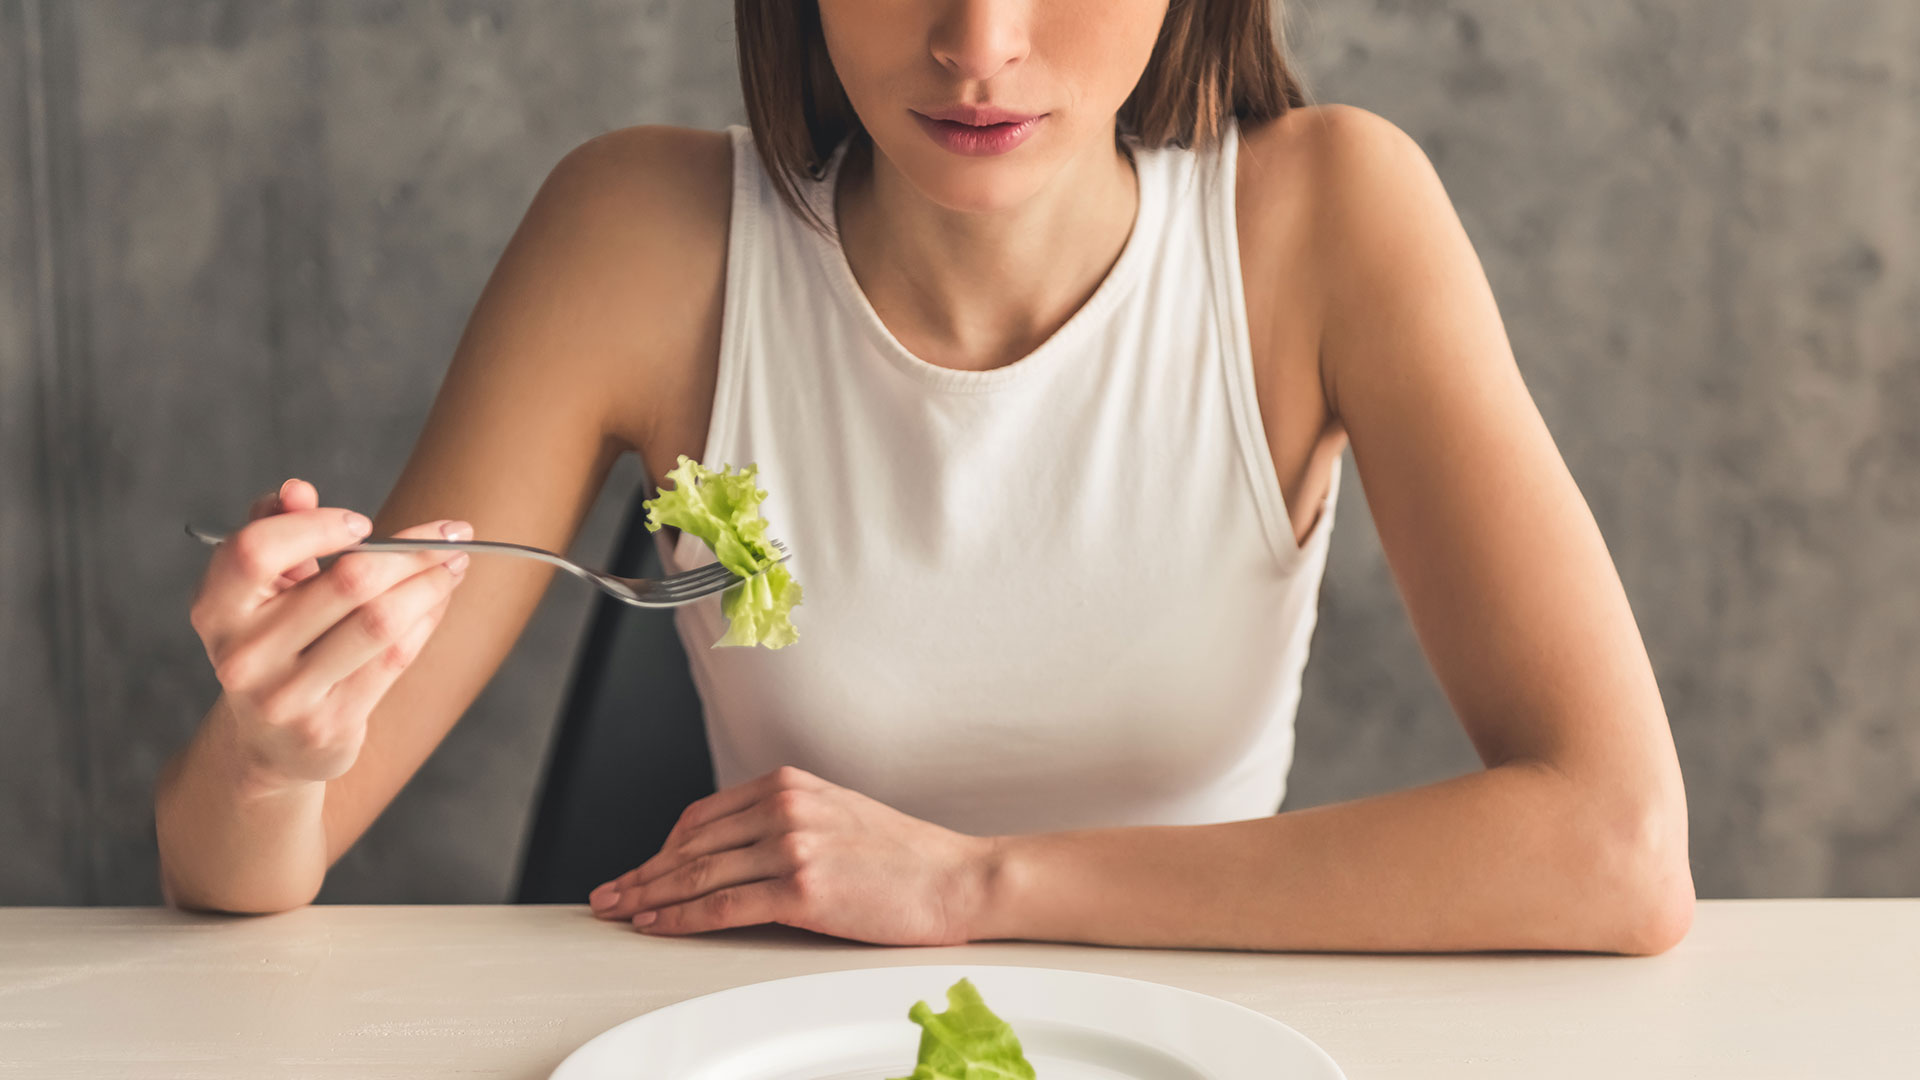 La ortorexia es la obsesión con la comida 100% saludable, llegando al punto de aislarse y de no poder consumir algo fuera de lo que la persona cree saludable (Getty)